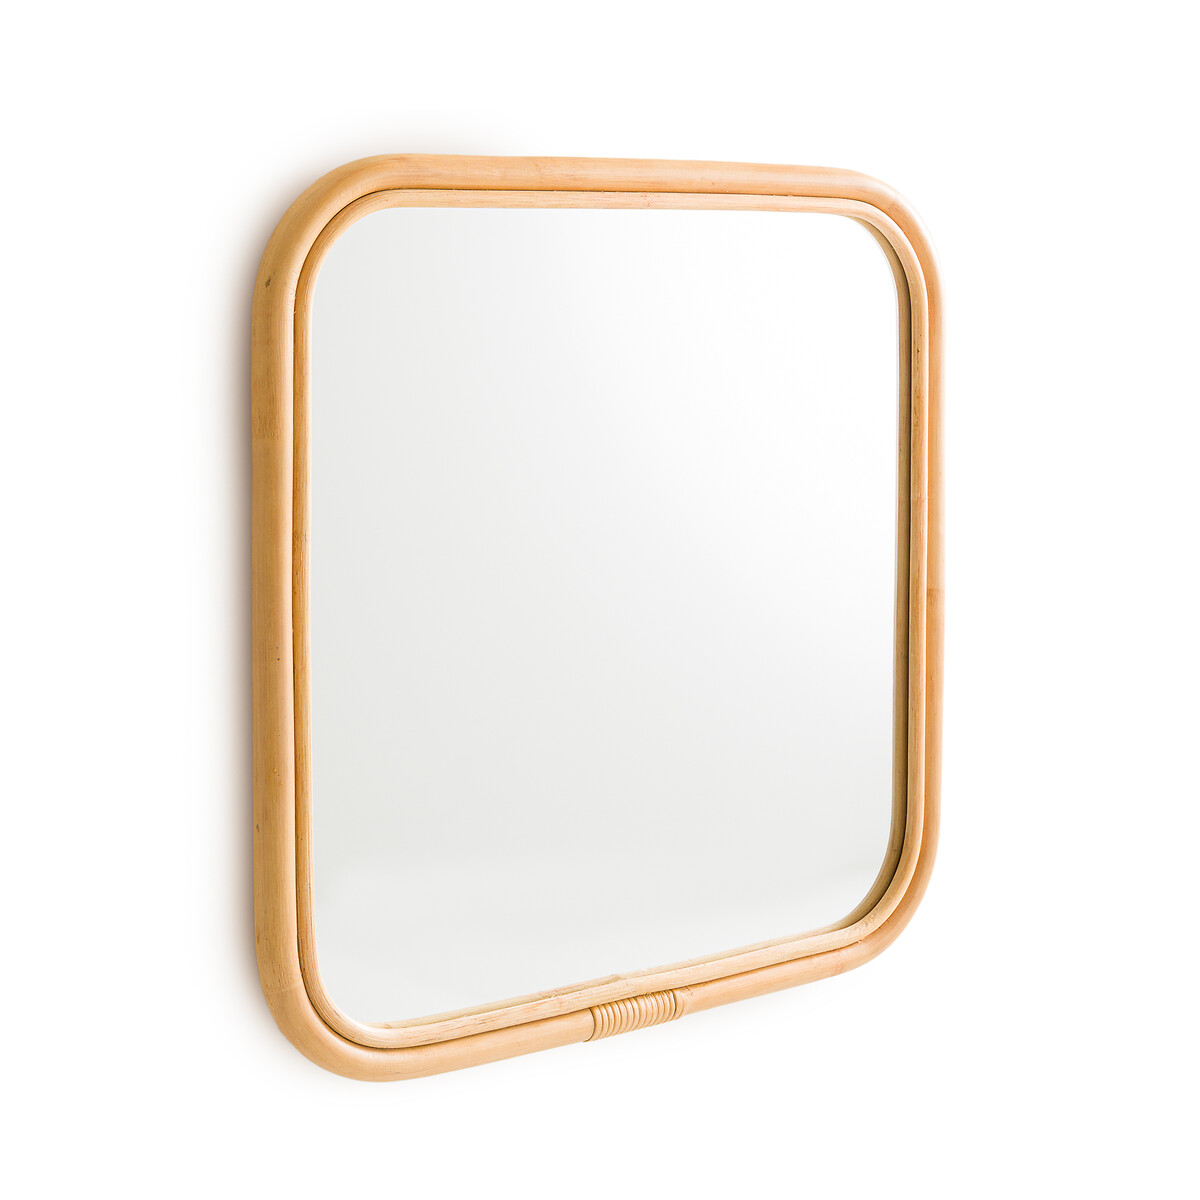 цена Зеркало квадратное с отделкой ротангом 60x60 см Nogu единый размер бежевый